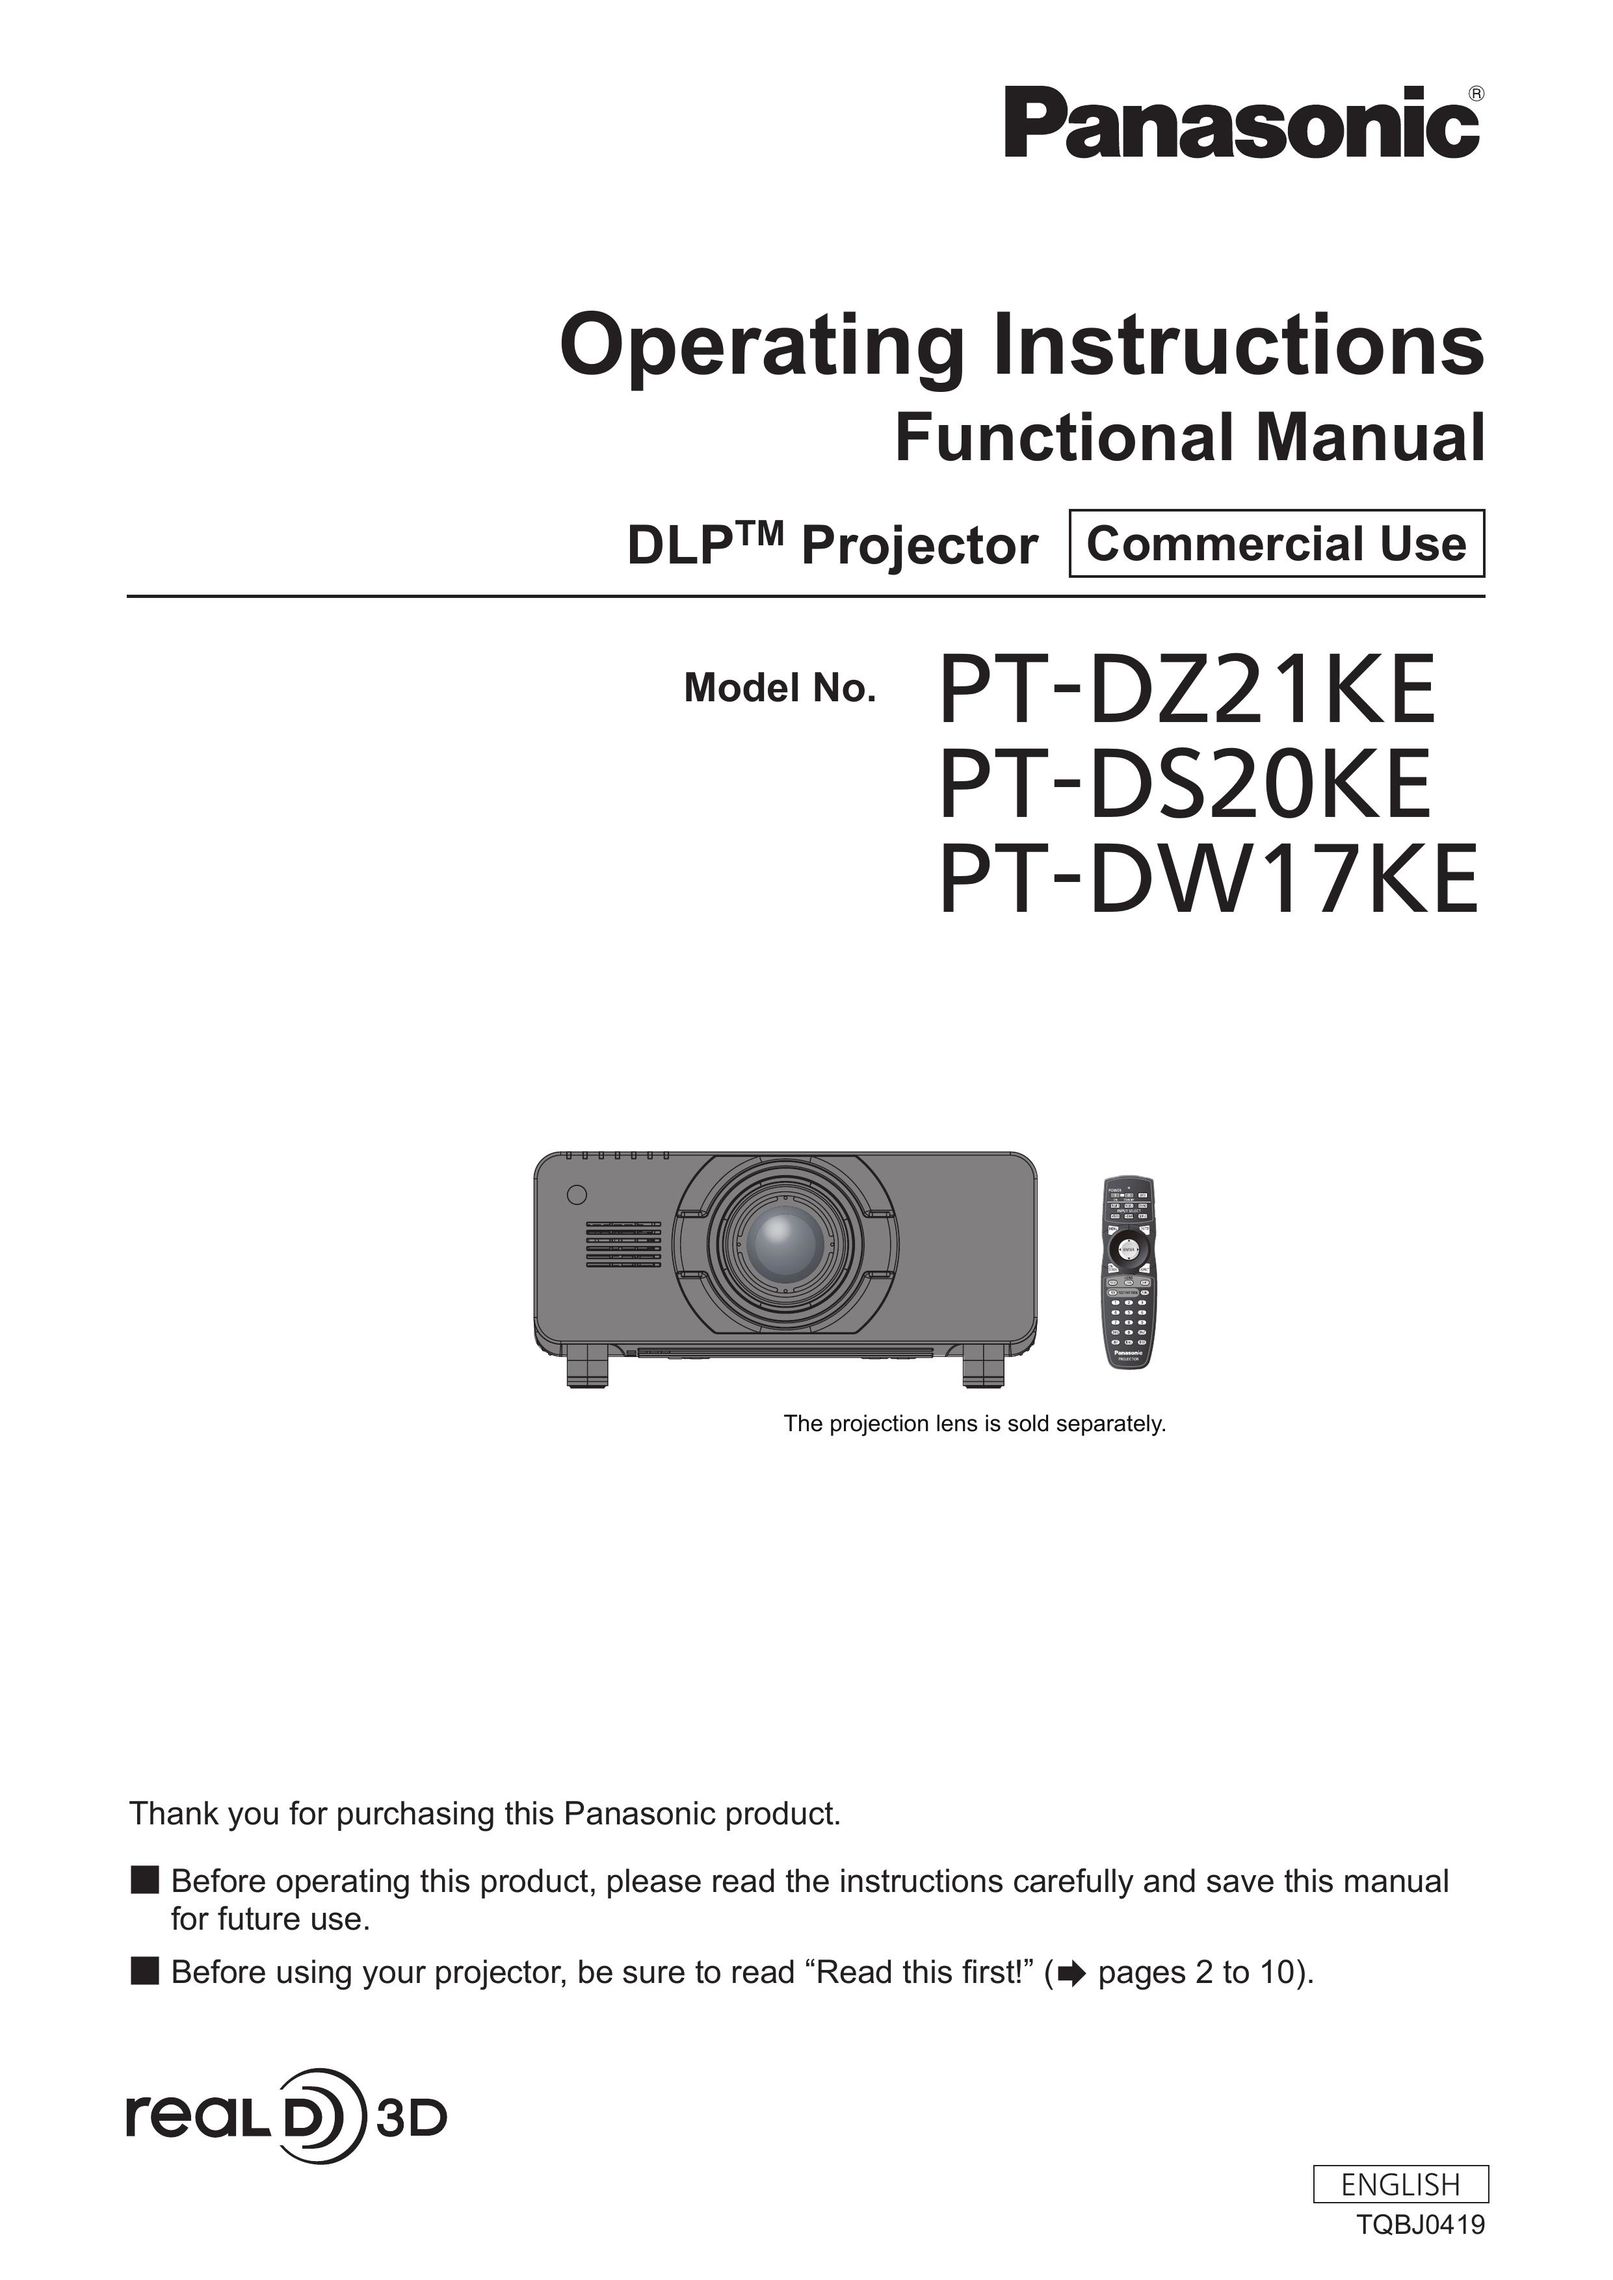 Panasonic PT-DW17KE Home Theater Screen User Manual